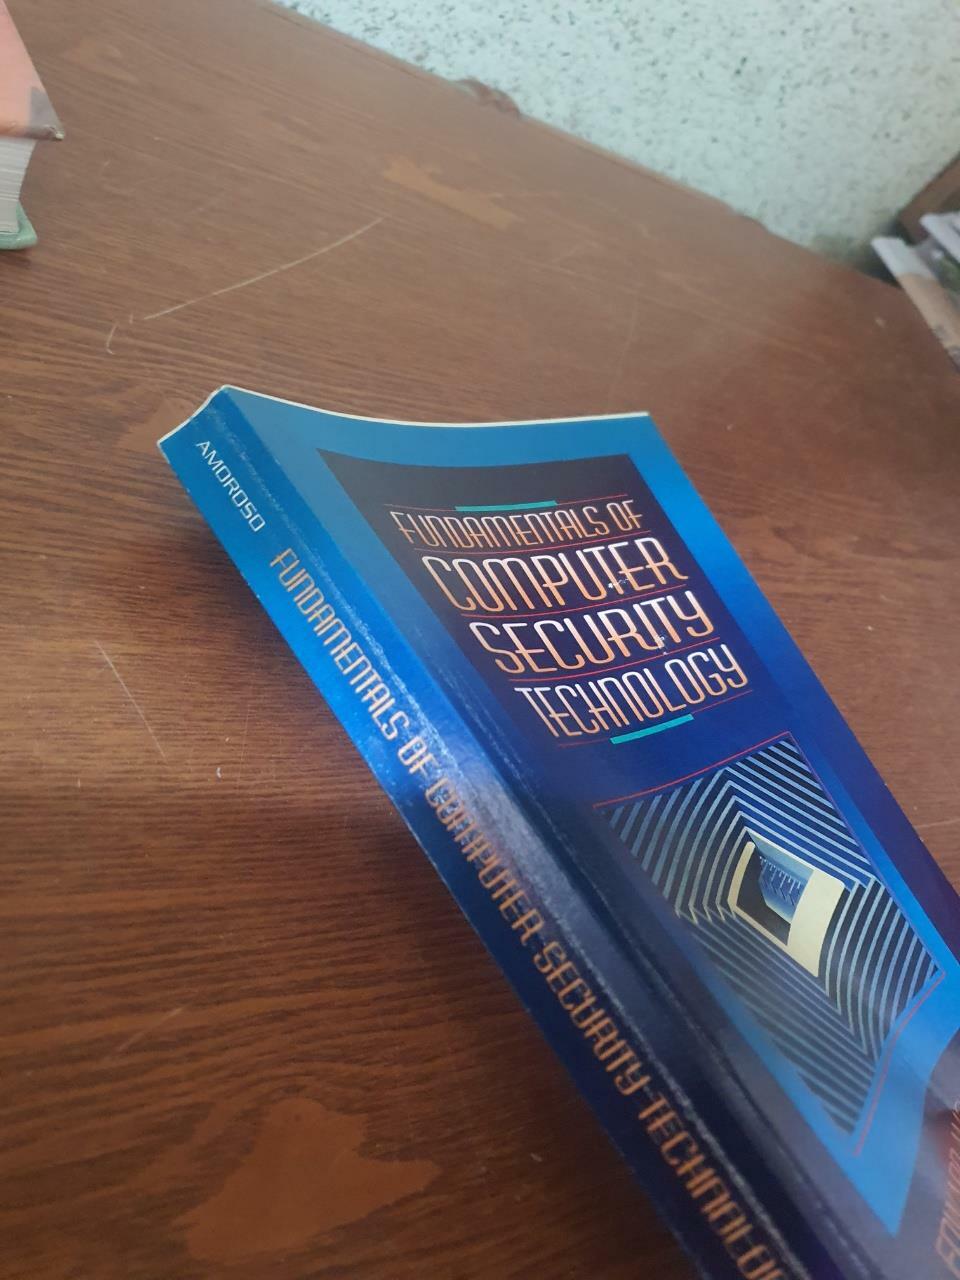 [중고] Fundamentals of Computer Security Technology (Paperback)